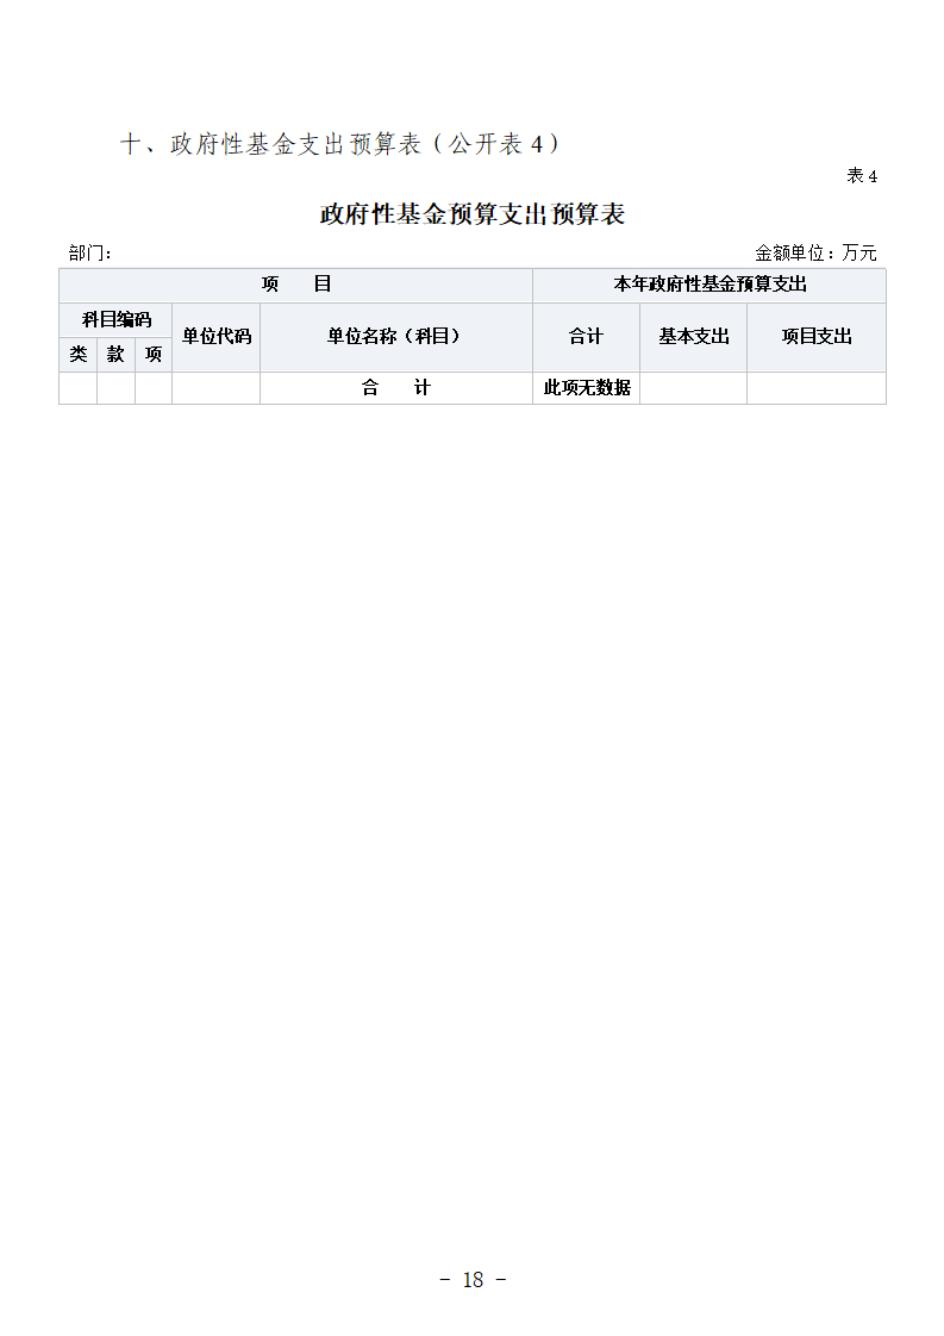 省考古院2024年四川省省级单位预算公开模板(3.14)_19.jpg